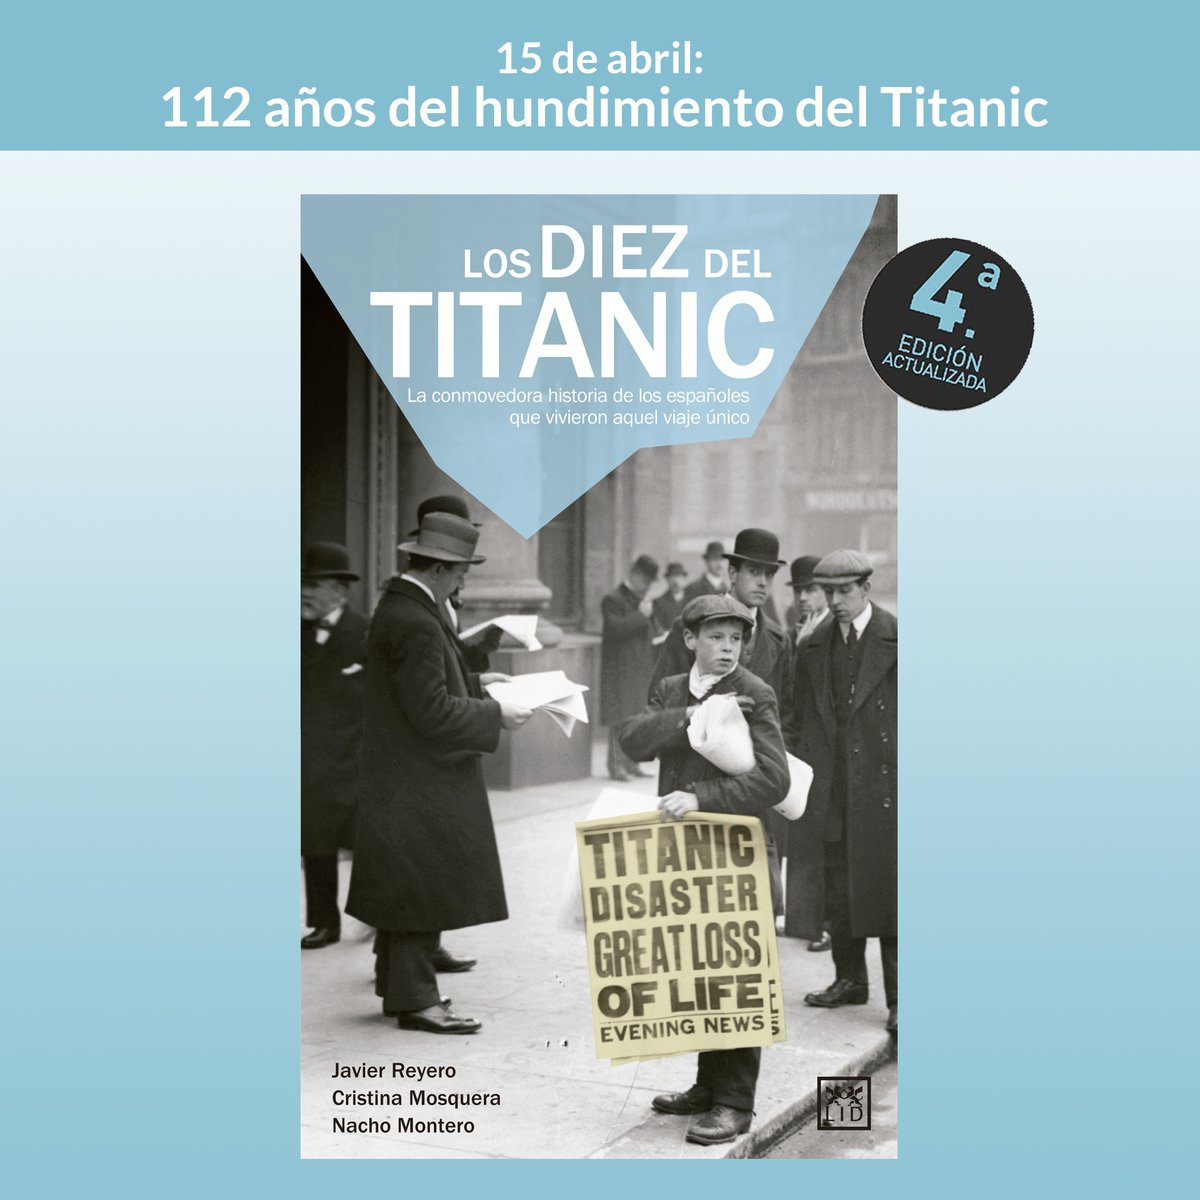 Hoy, #15Abril, hace 112 años del hundimiento del #Titanic. Conoce la historia de los diez españoles que viajaban en él con #LosdiezdelTitanic 📙 lidlibros.com/fichalibro.php… Y, no te pierdas la exposición que empieza hoy mismo en #Madrid👇 lidlibros.com/noticia.php?no…